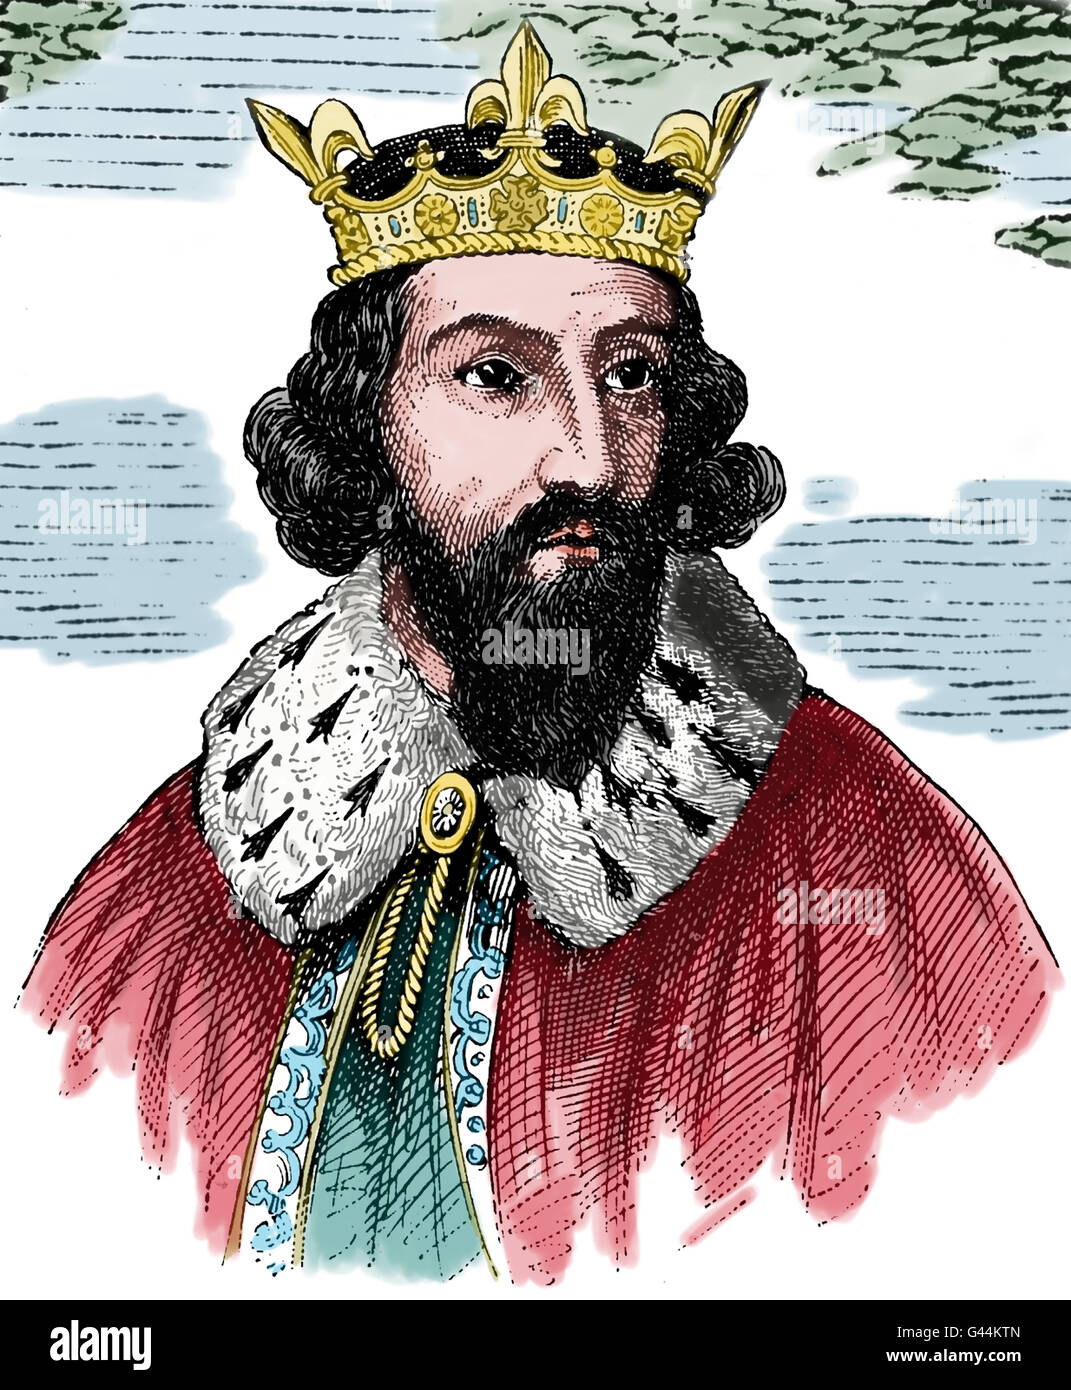 Alfred le Grand (849-899). Roi du Wessex à partir de 871-899. A défendu son royaume contre les Vikings. Portrait. Gravure, 19c Banque D'Images